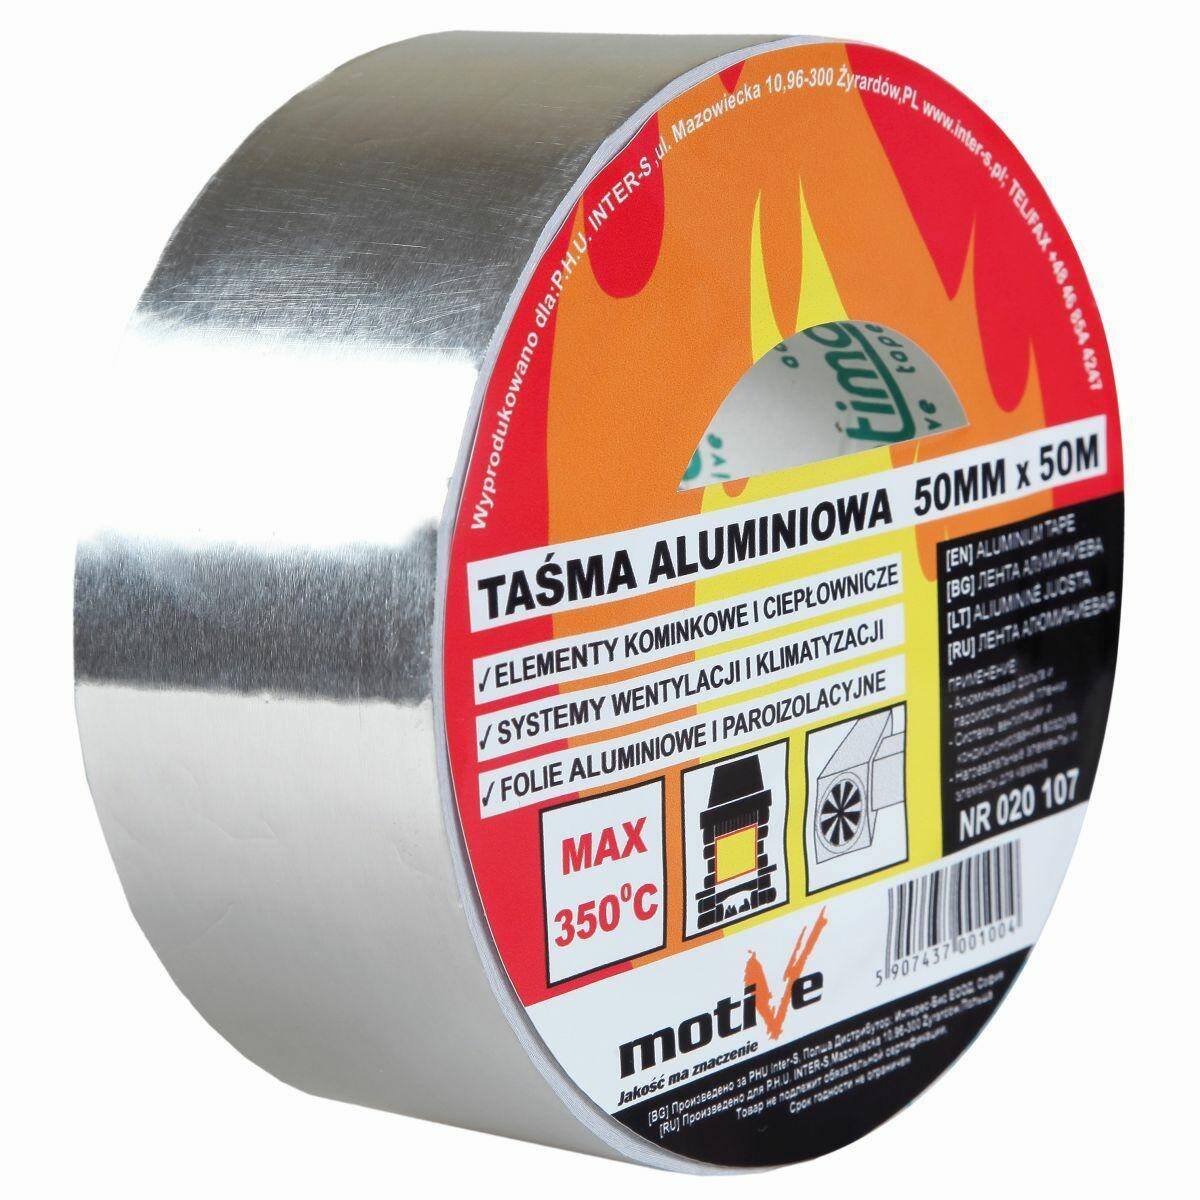 MOTIVE Taśma aluminiowa 50x50m (350*C)